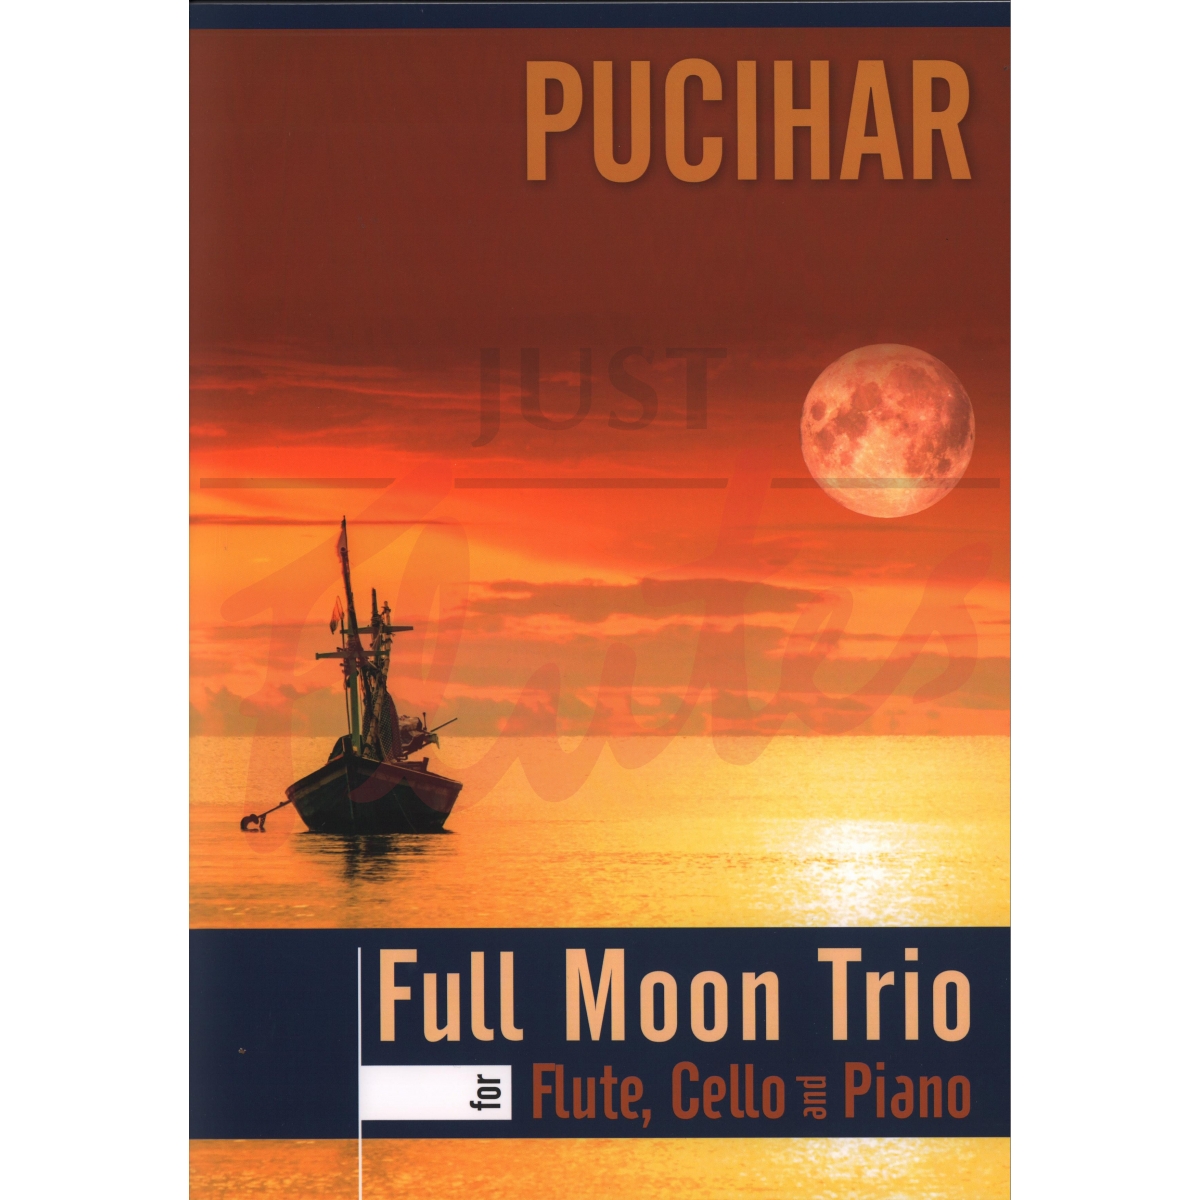 Full Moon Trio for Flute, Cello and Piano